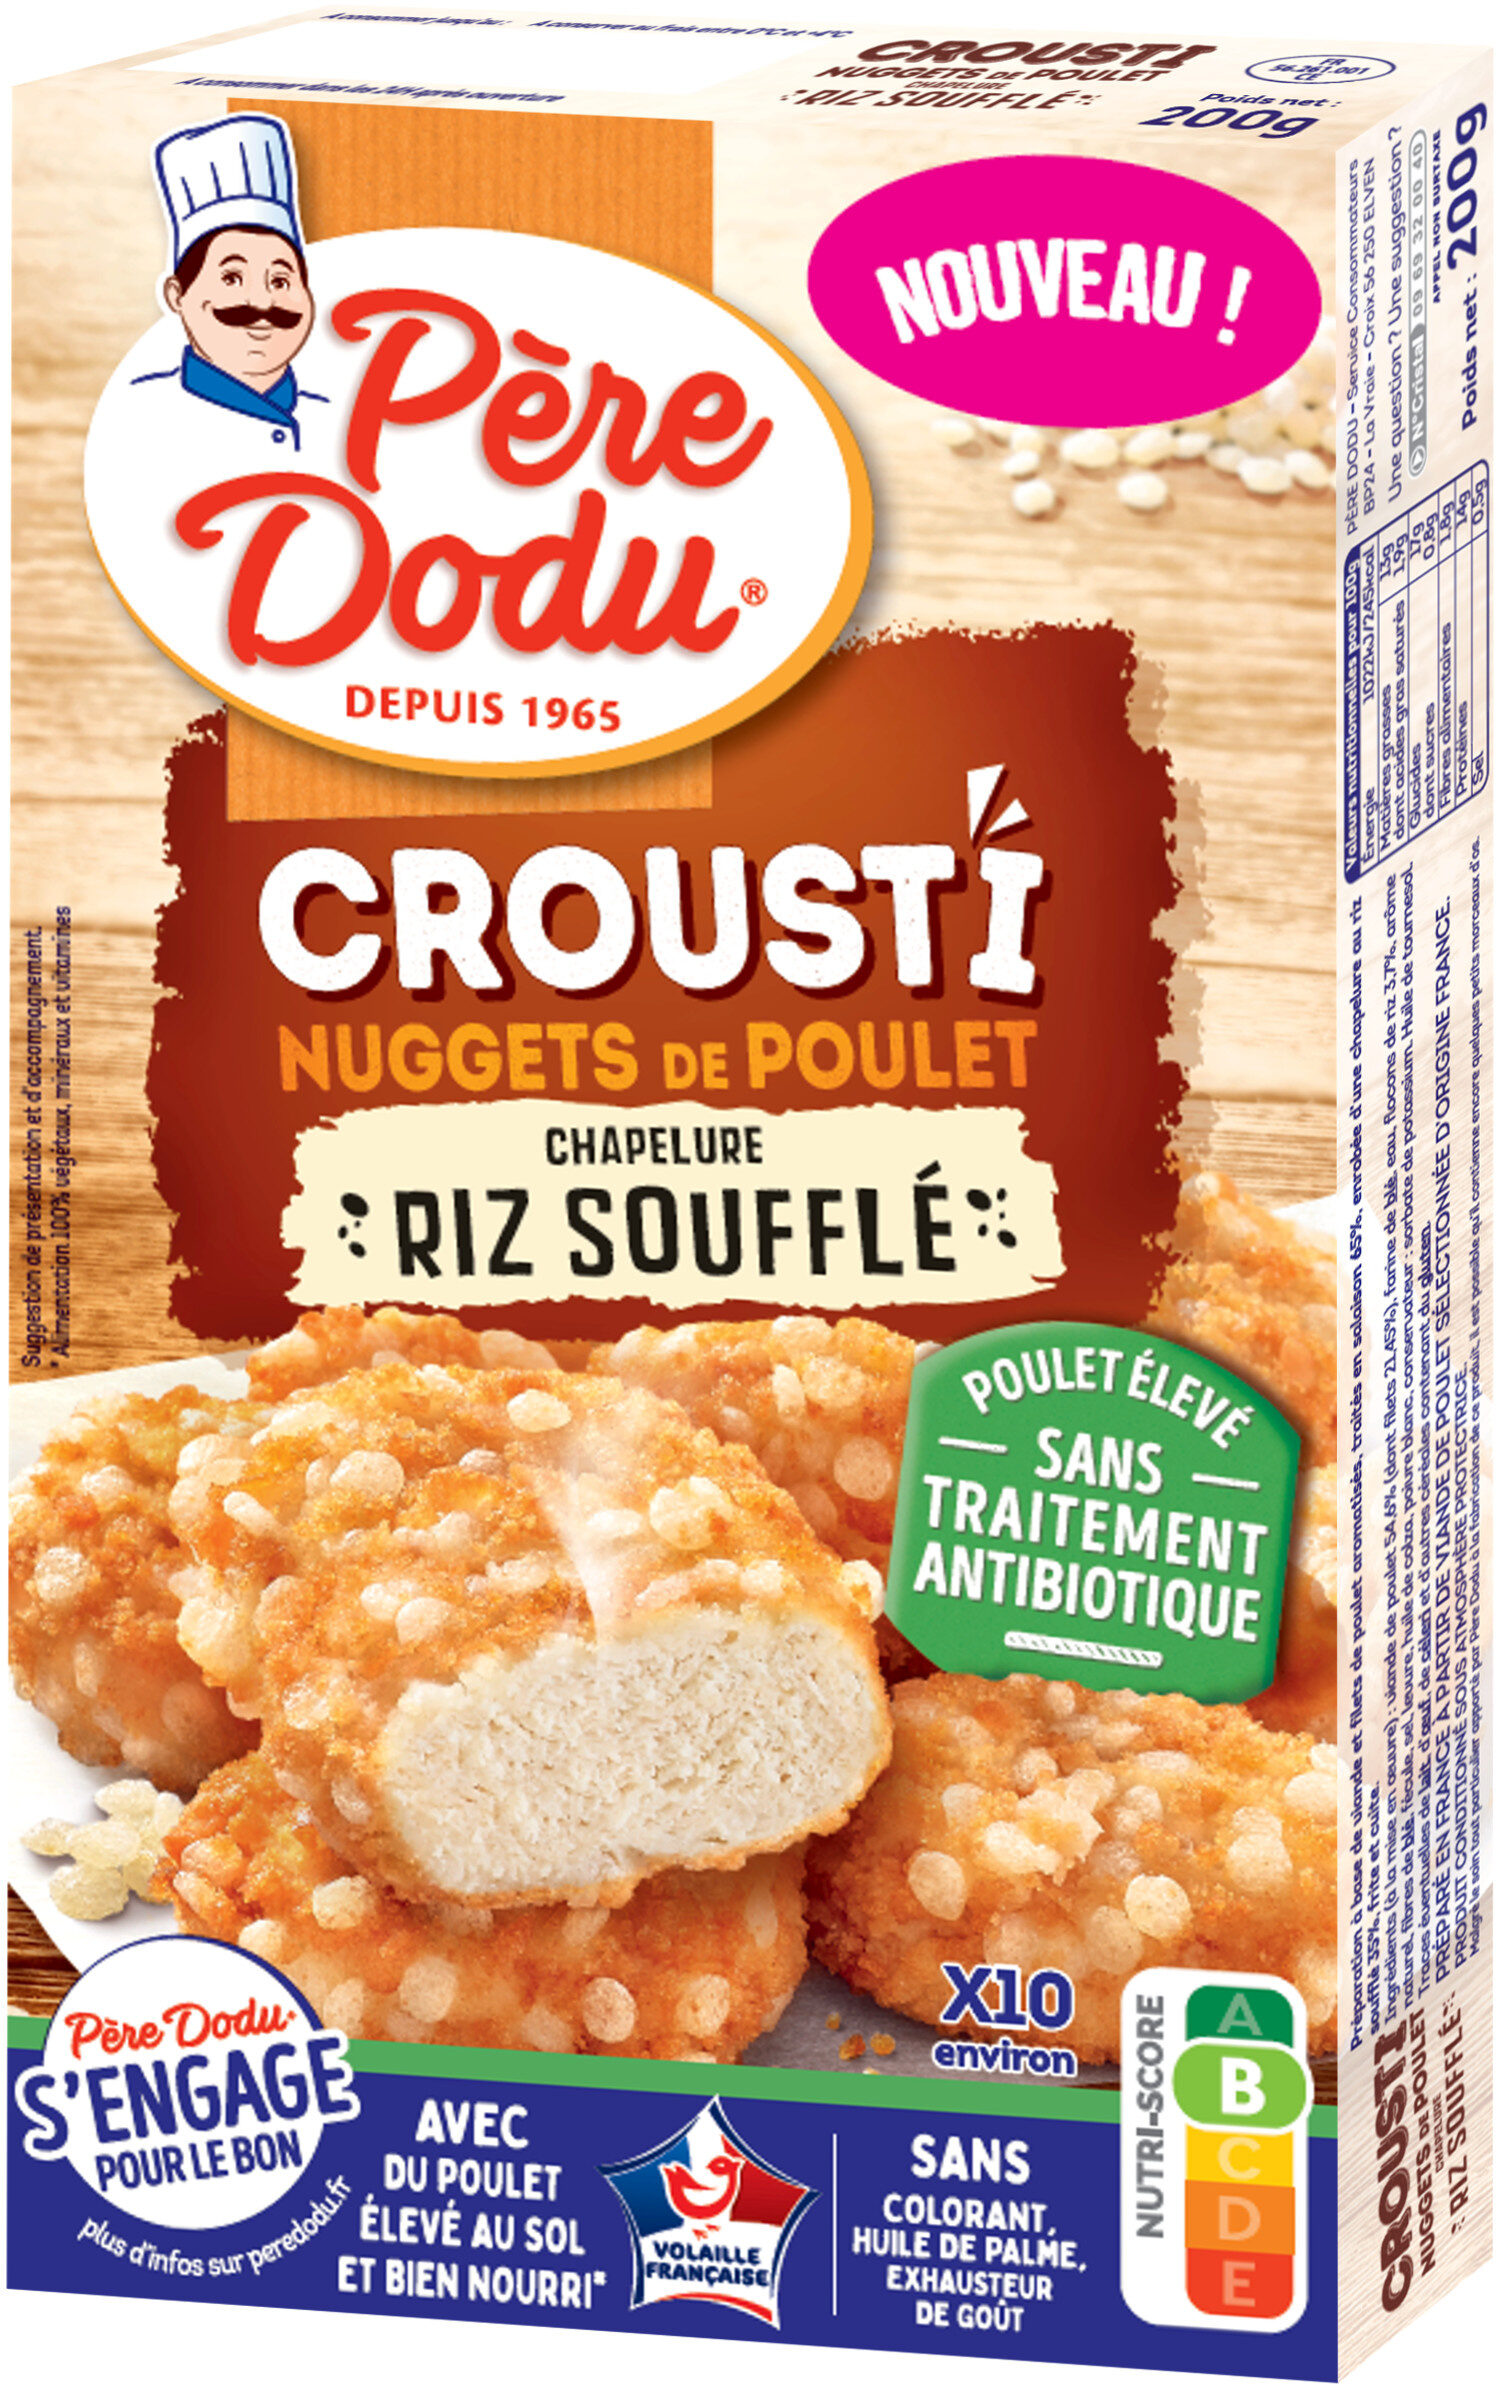 Crousti nuggets de poulet chapelure riz souffle - Produit